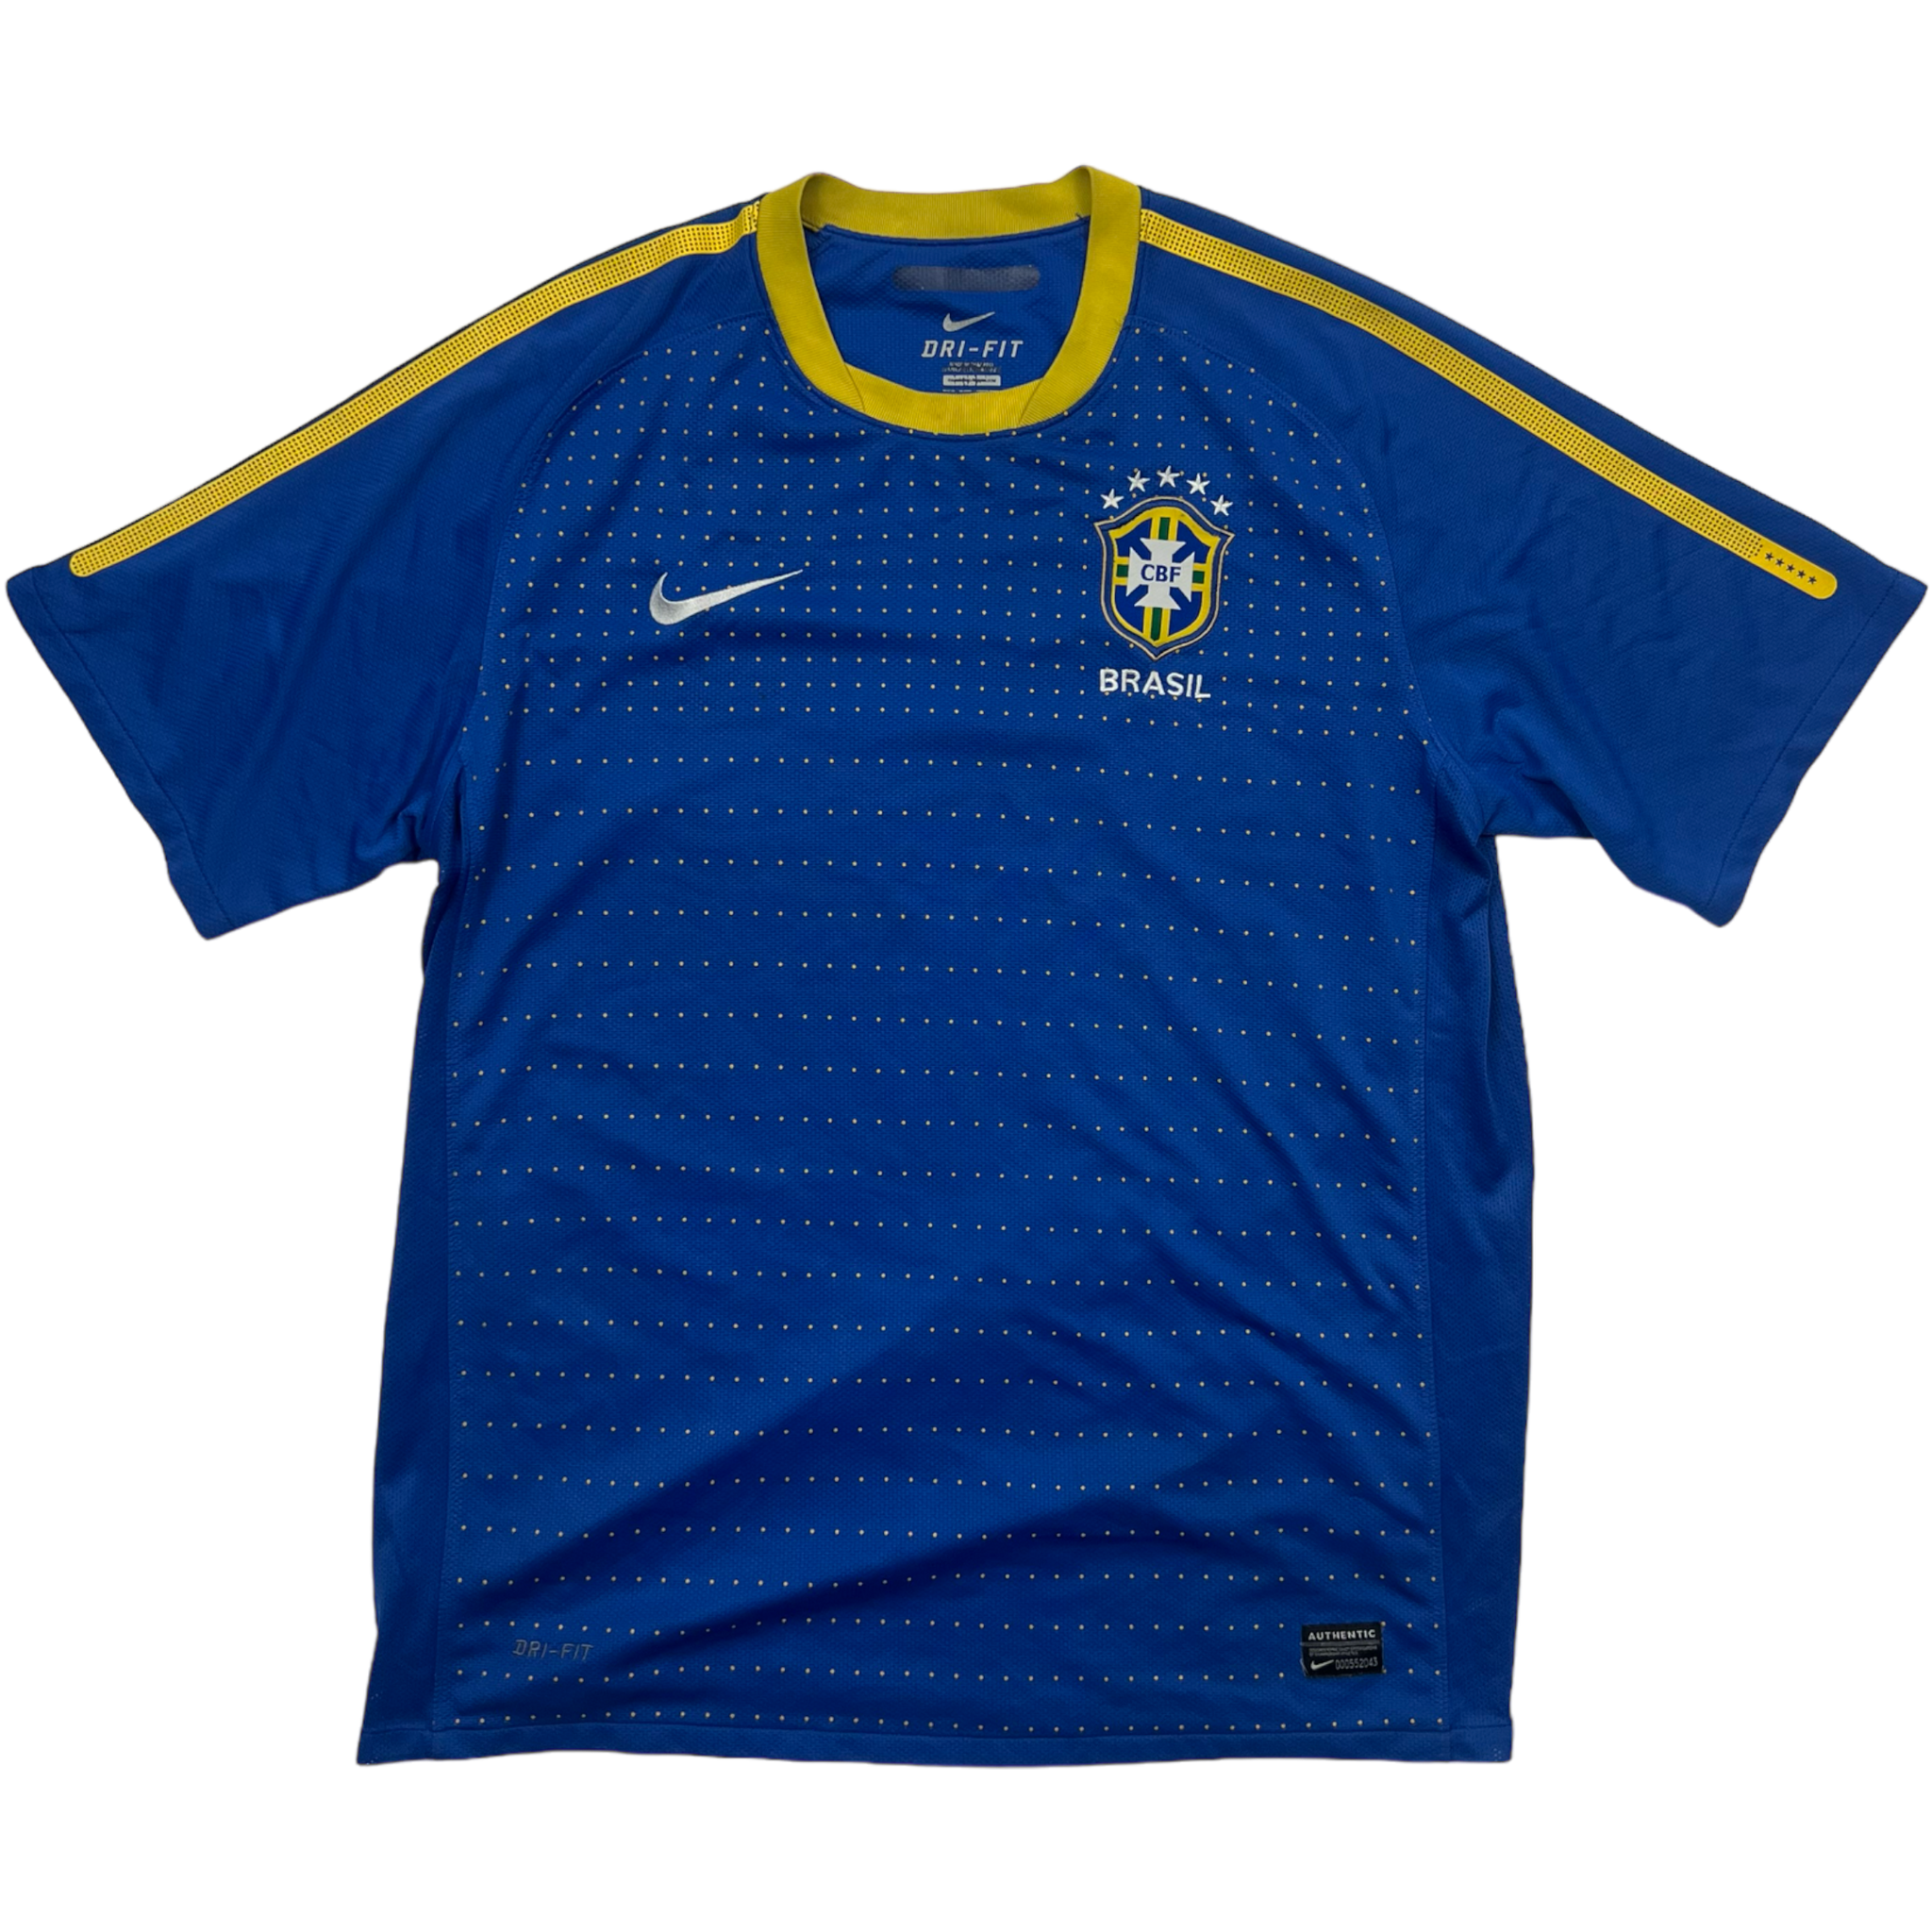 Nike Brazil Jersey (L)